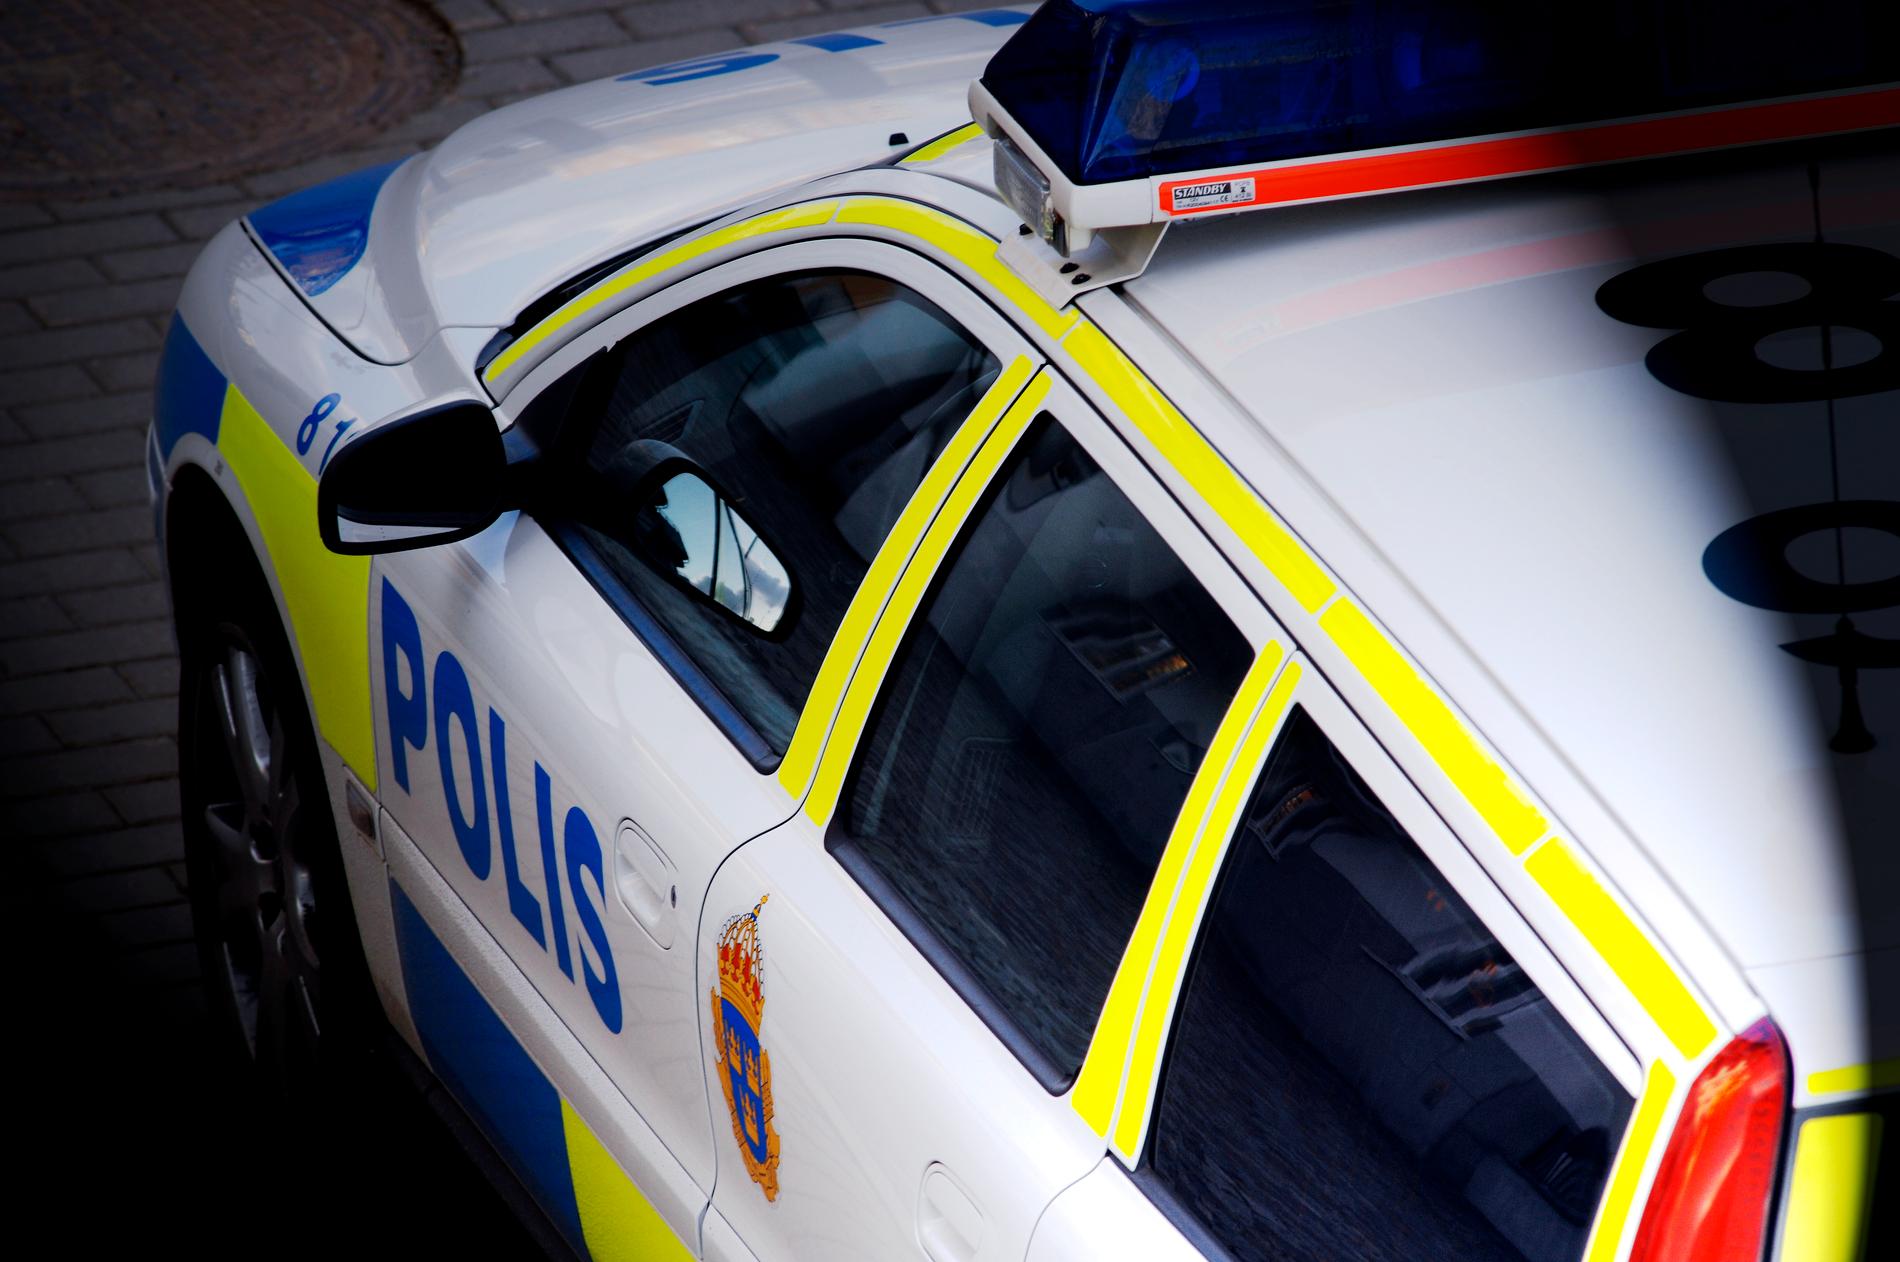 När polisen skulle ingripa vid bråk under en skolturnering i Malmö kastades bland annat föremål mot en polisbil. Arkivbild.